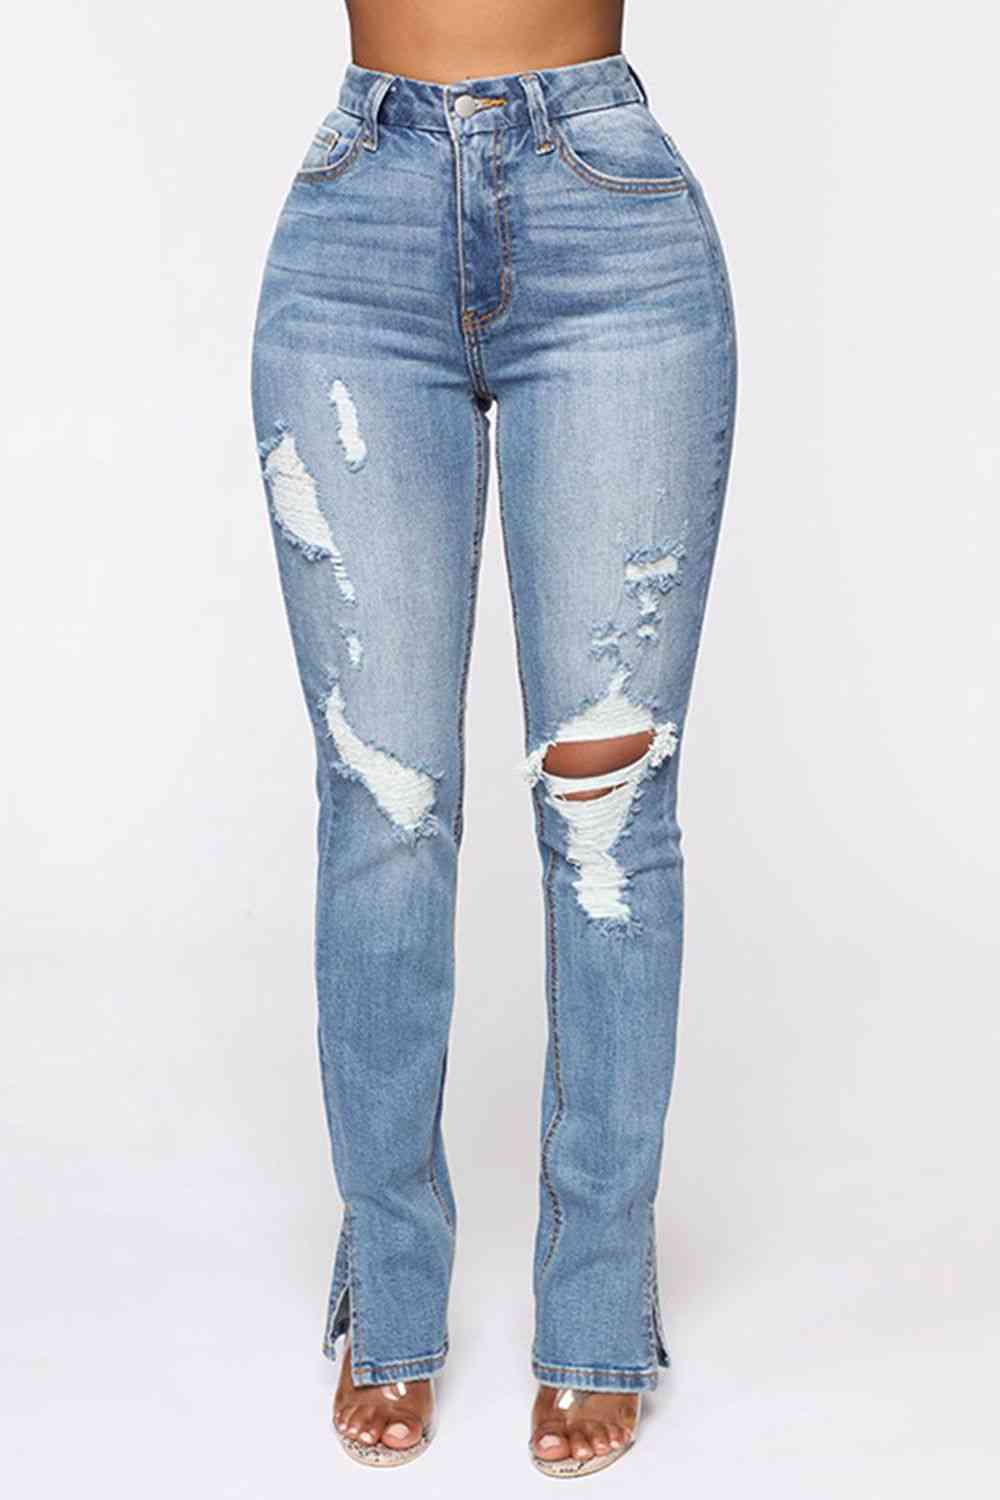 Distressed Slit Jeans Trendsi